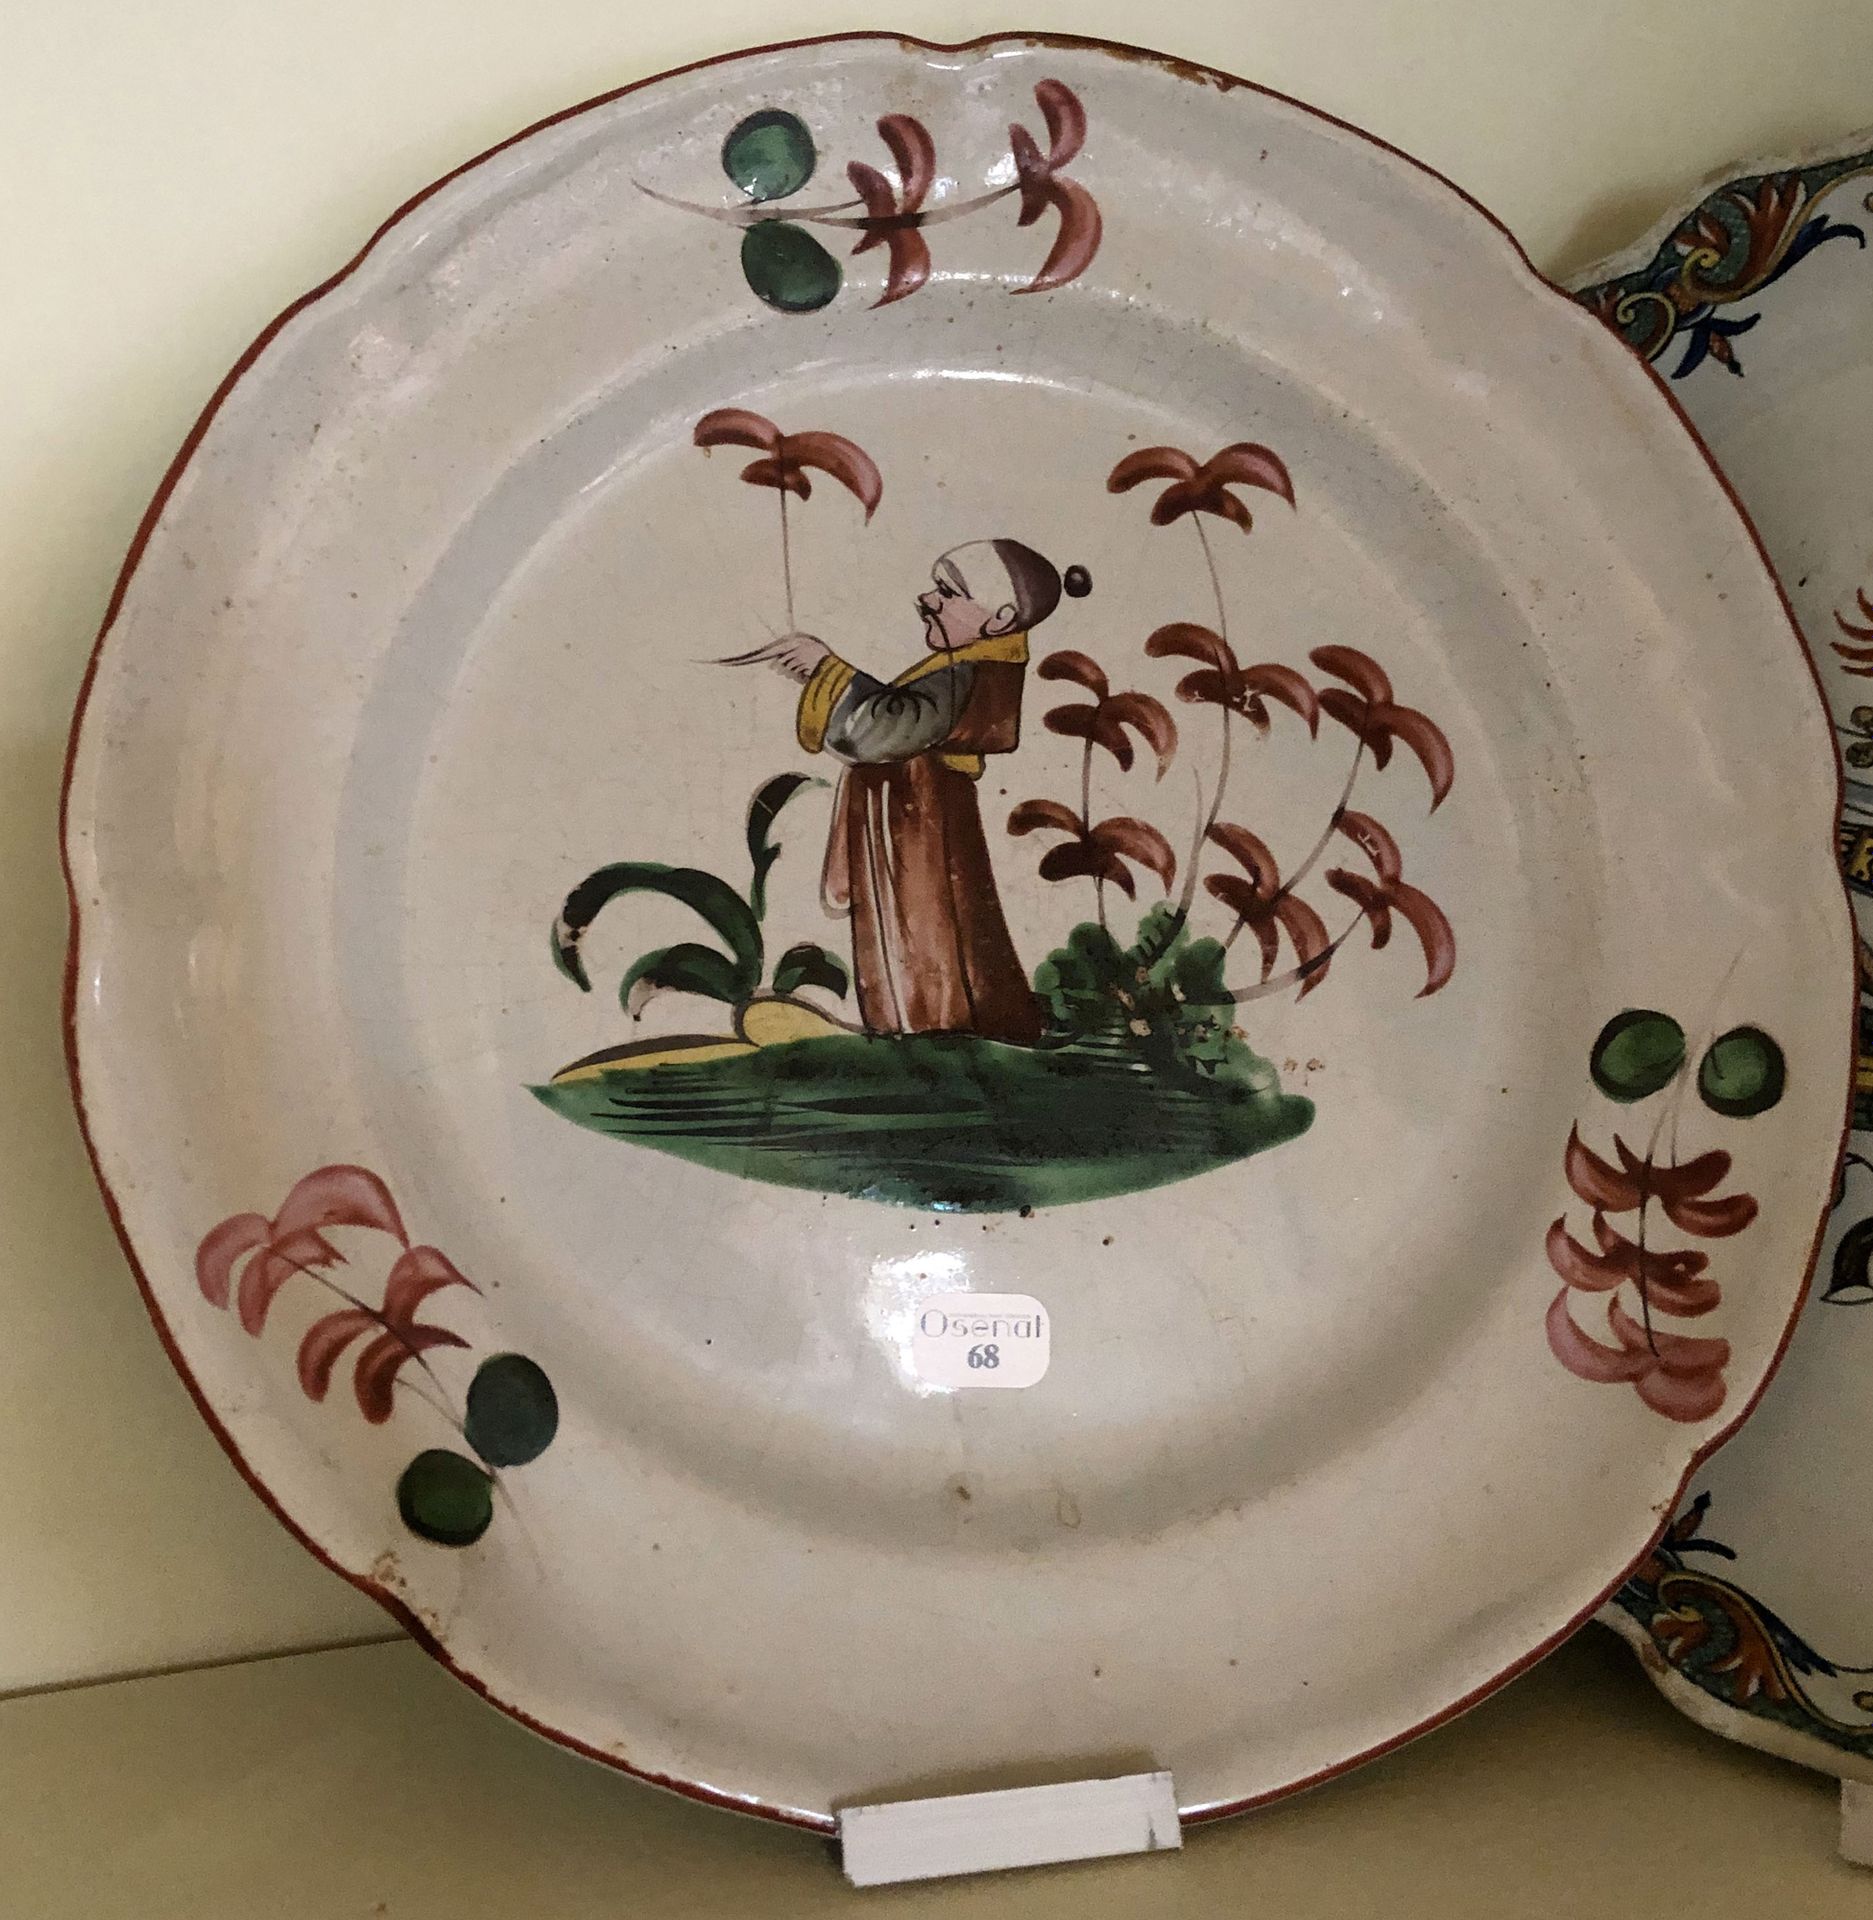 Null 马兰士陶器的圆盘和平盘。 									 中国的装饰。 							 十八世纪末 直径: 23 cm (状况良好)